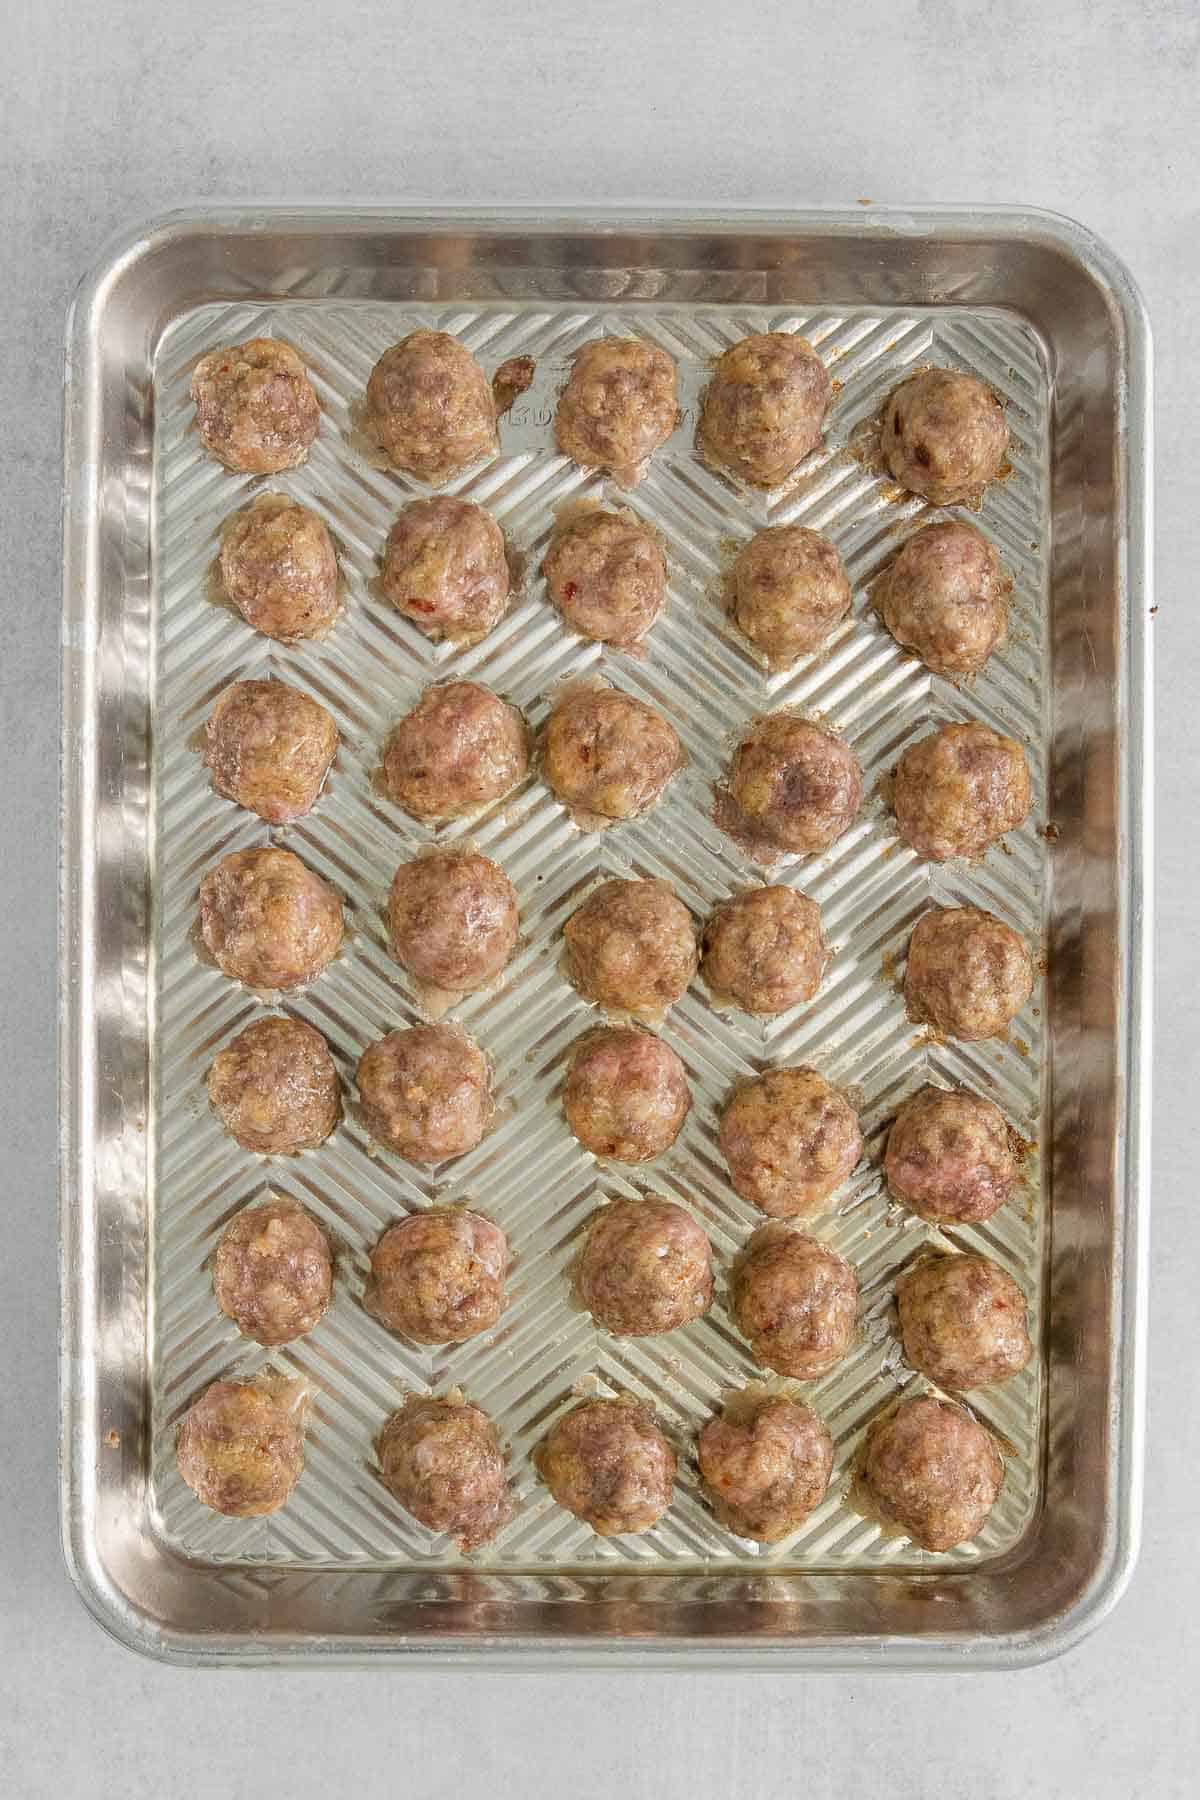 baking sheet full of baked meatballs.